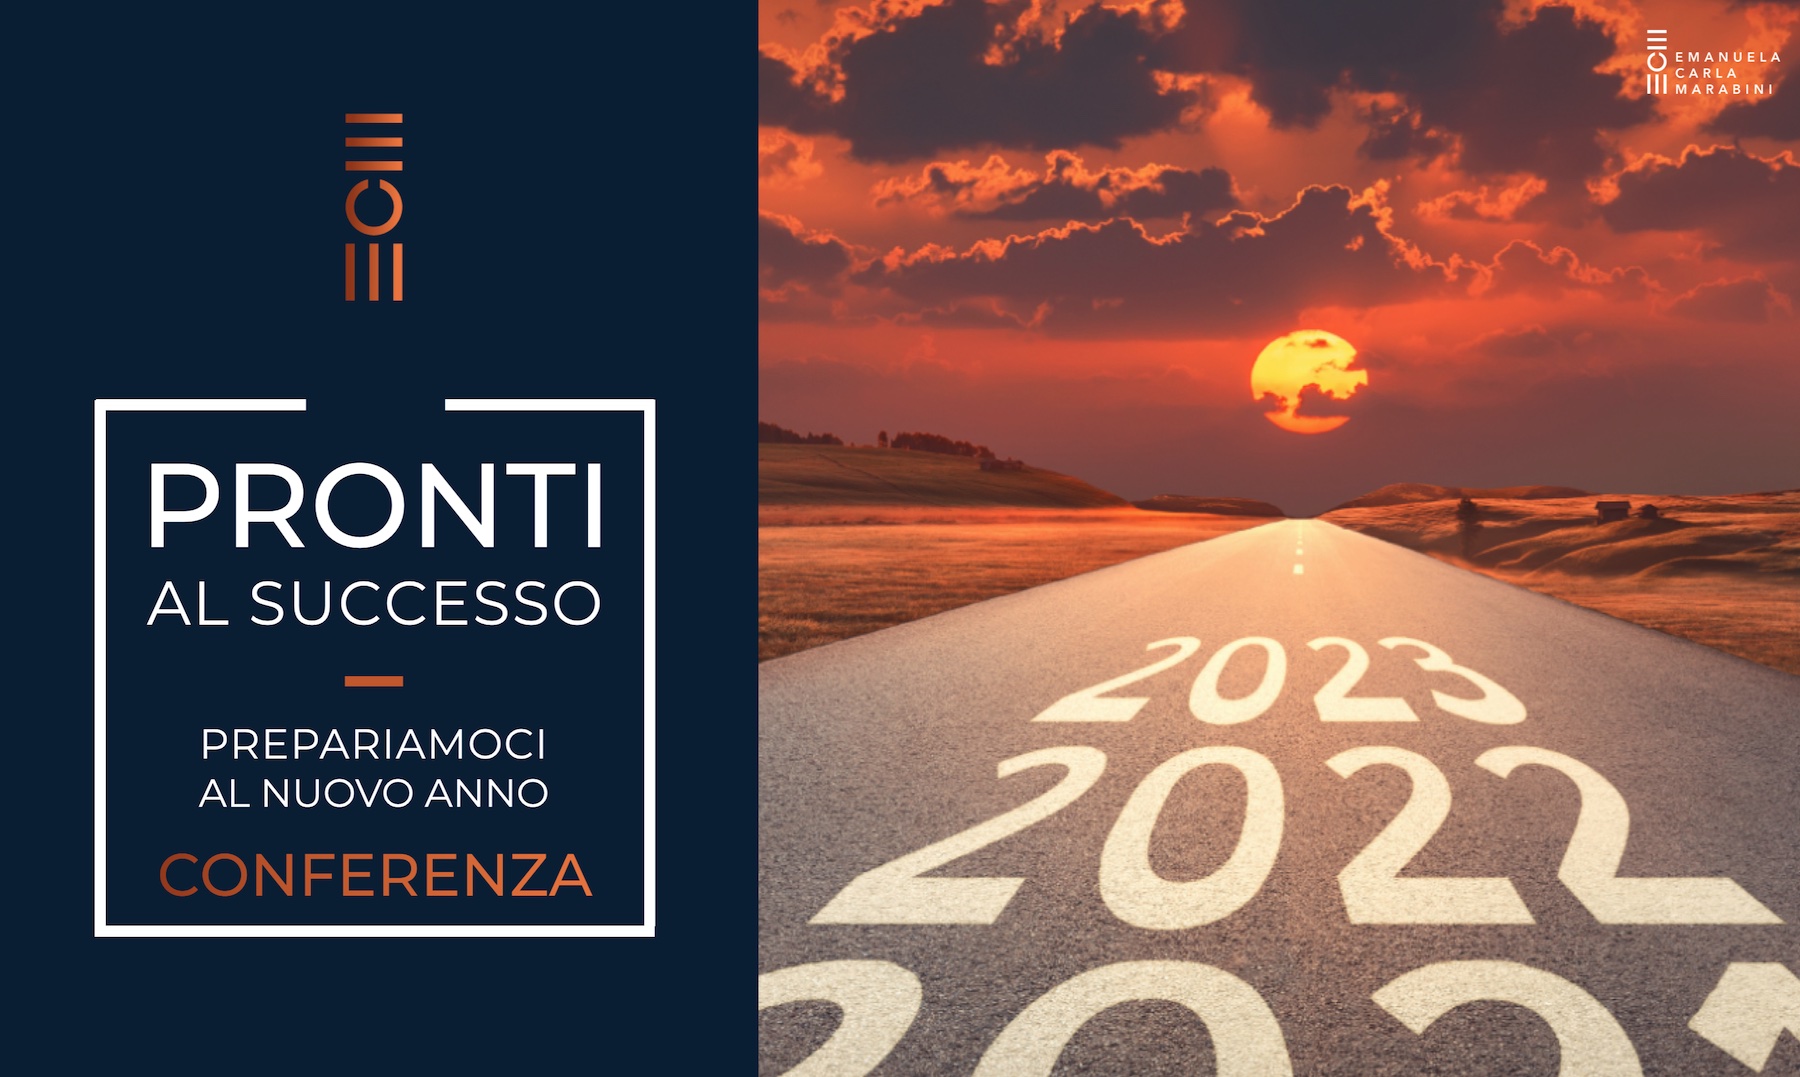 Conferenza_gratuita_2022_2023_anno_nuovo_Emanuela_Carla_Marabini_1